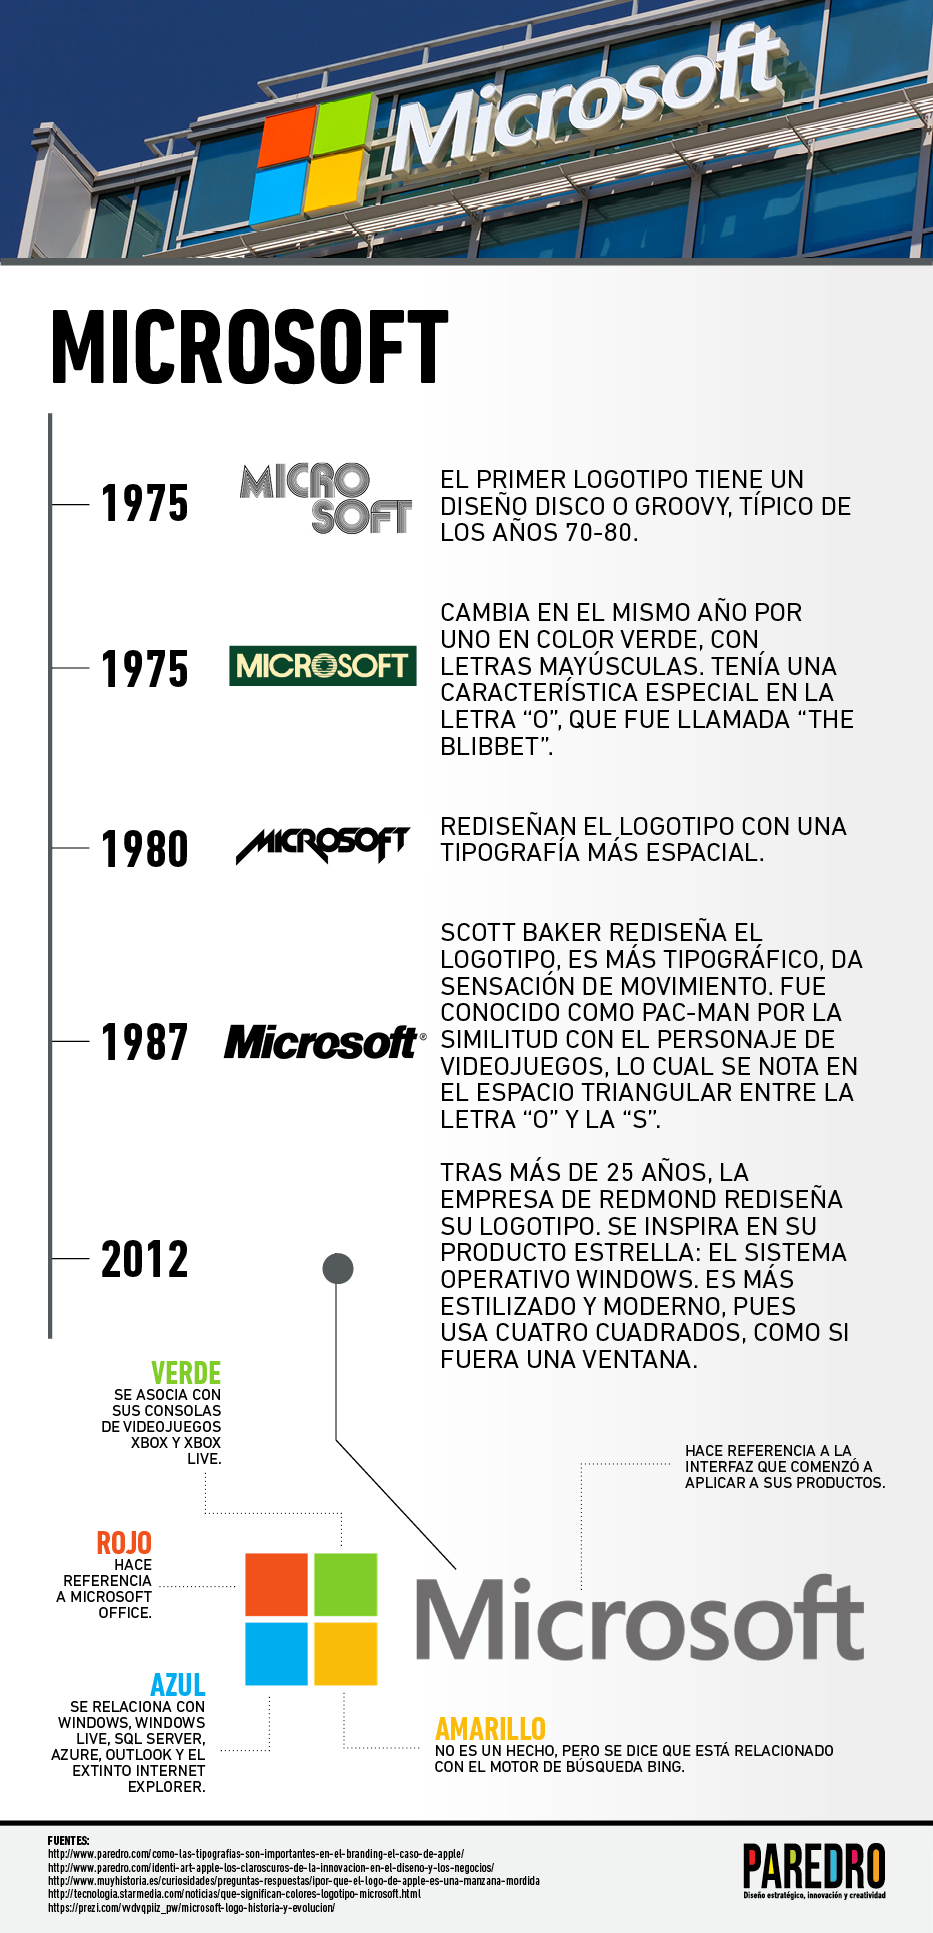 LogoDelDía: Microsoft y los colores de su ventana | Paredro